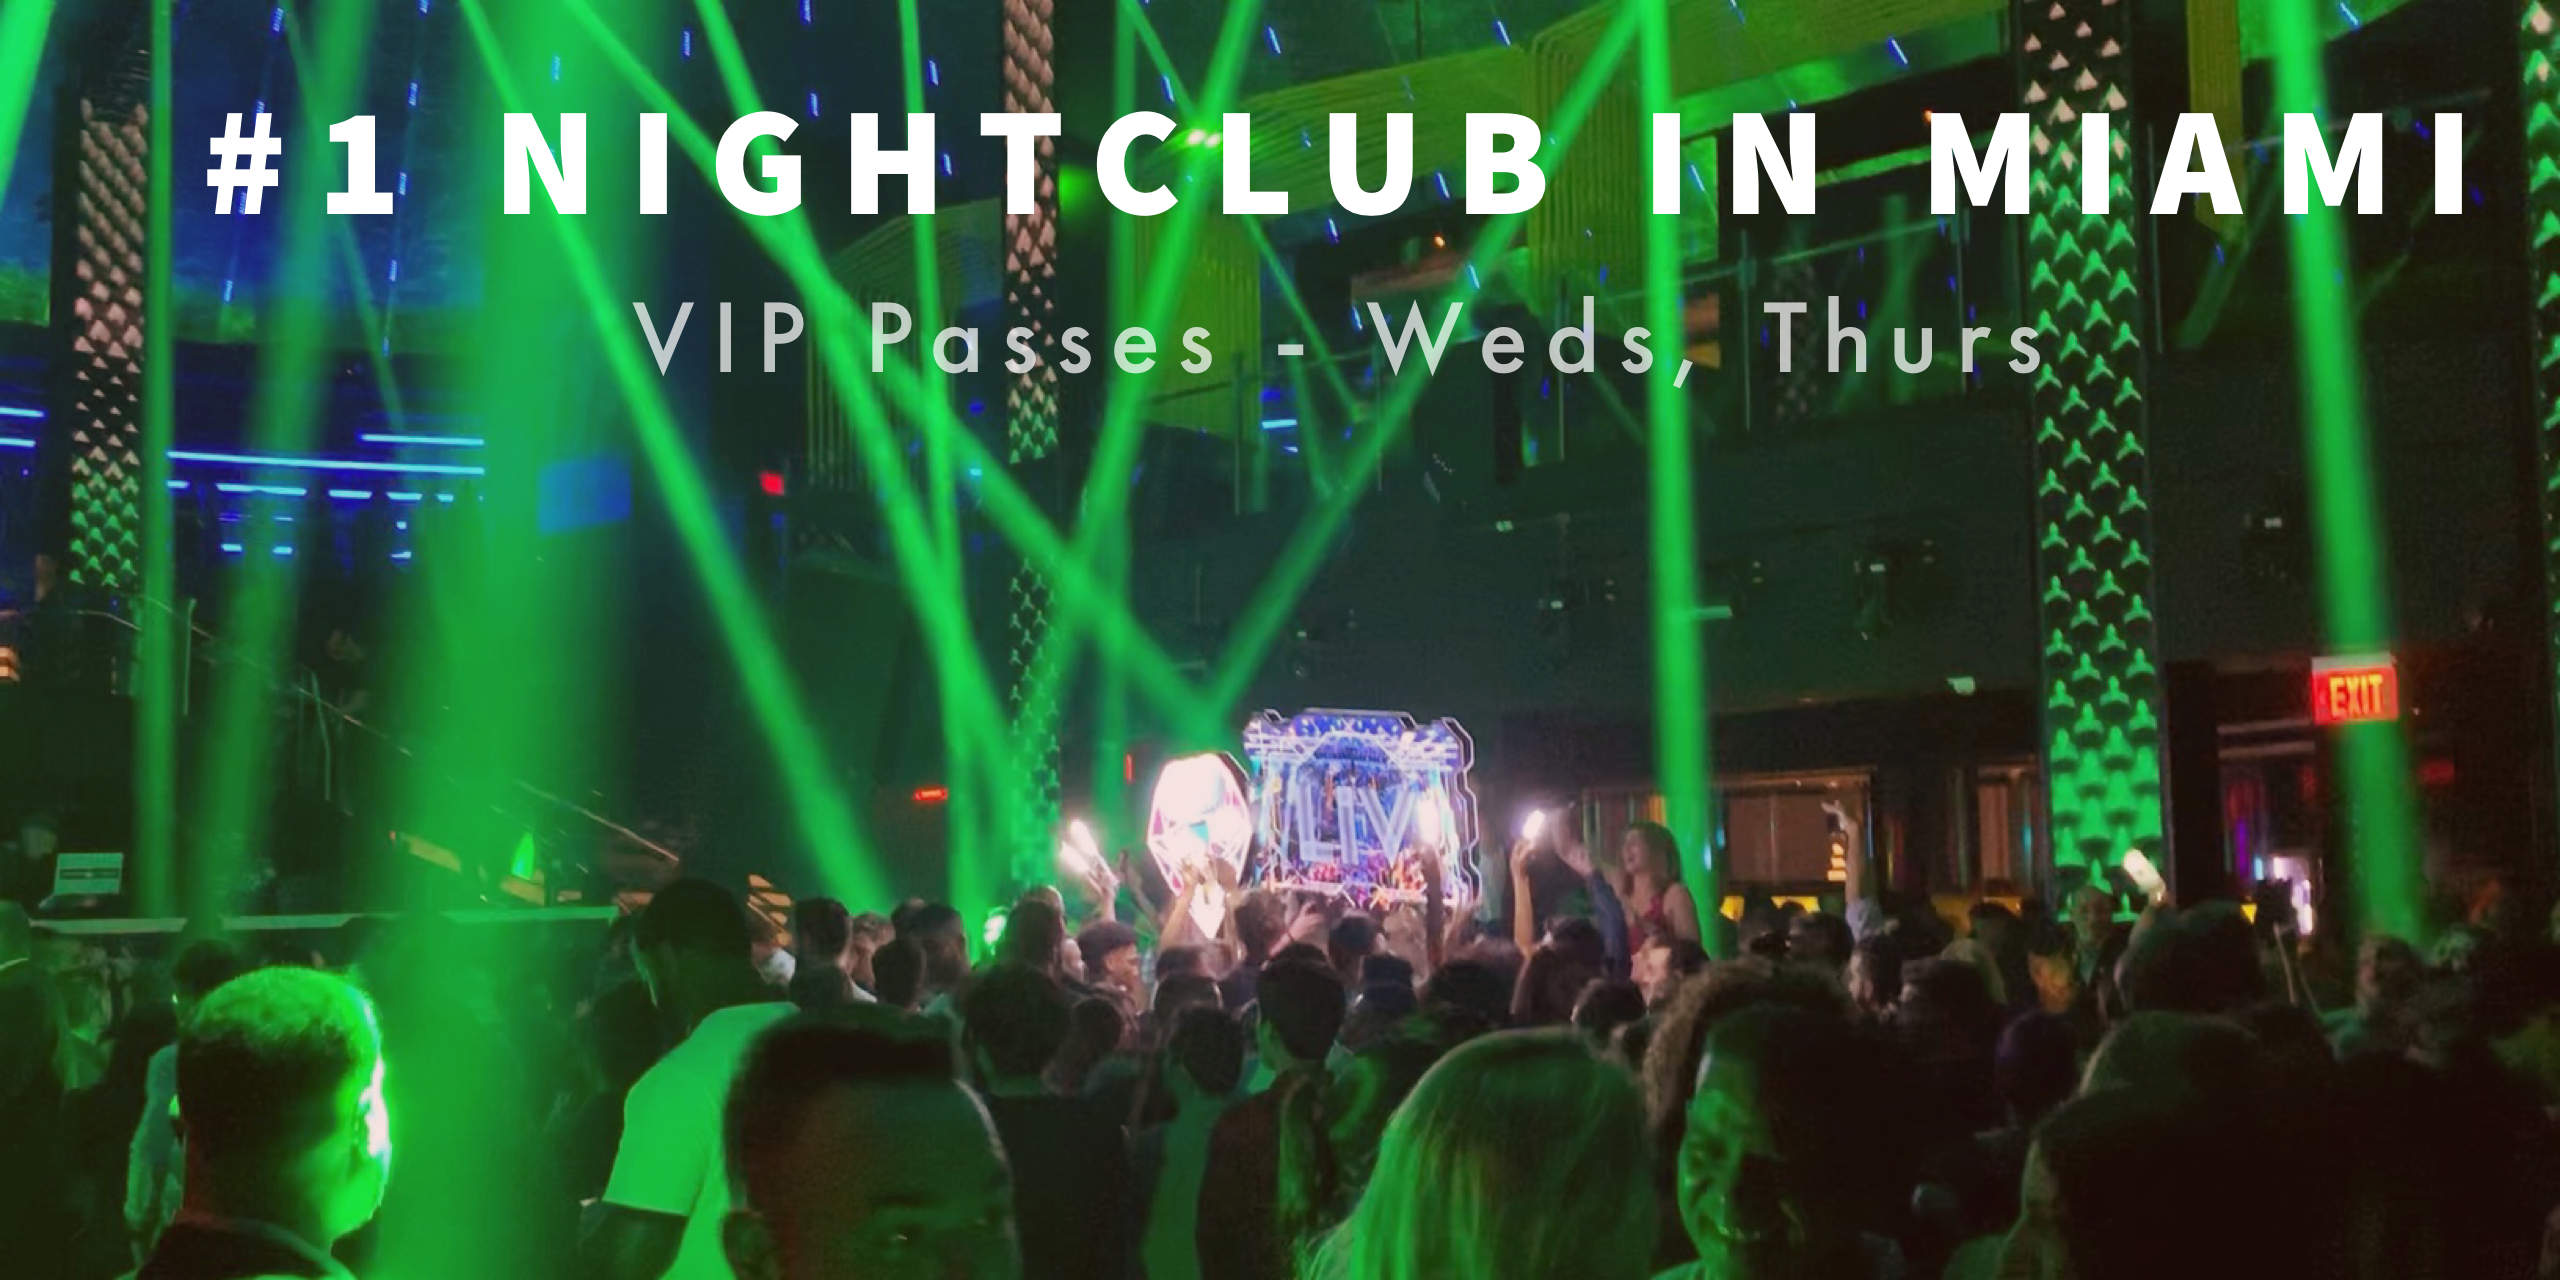 Spring Break 2020 Ultimate VIP Party Package to #1 Nightclub